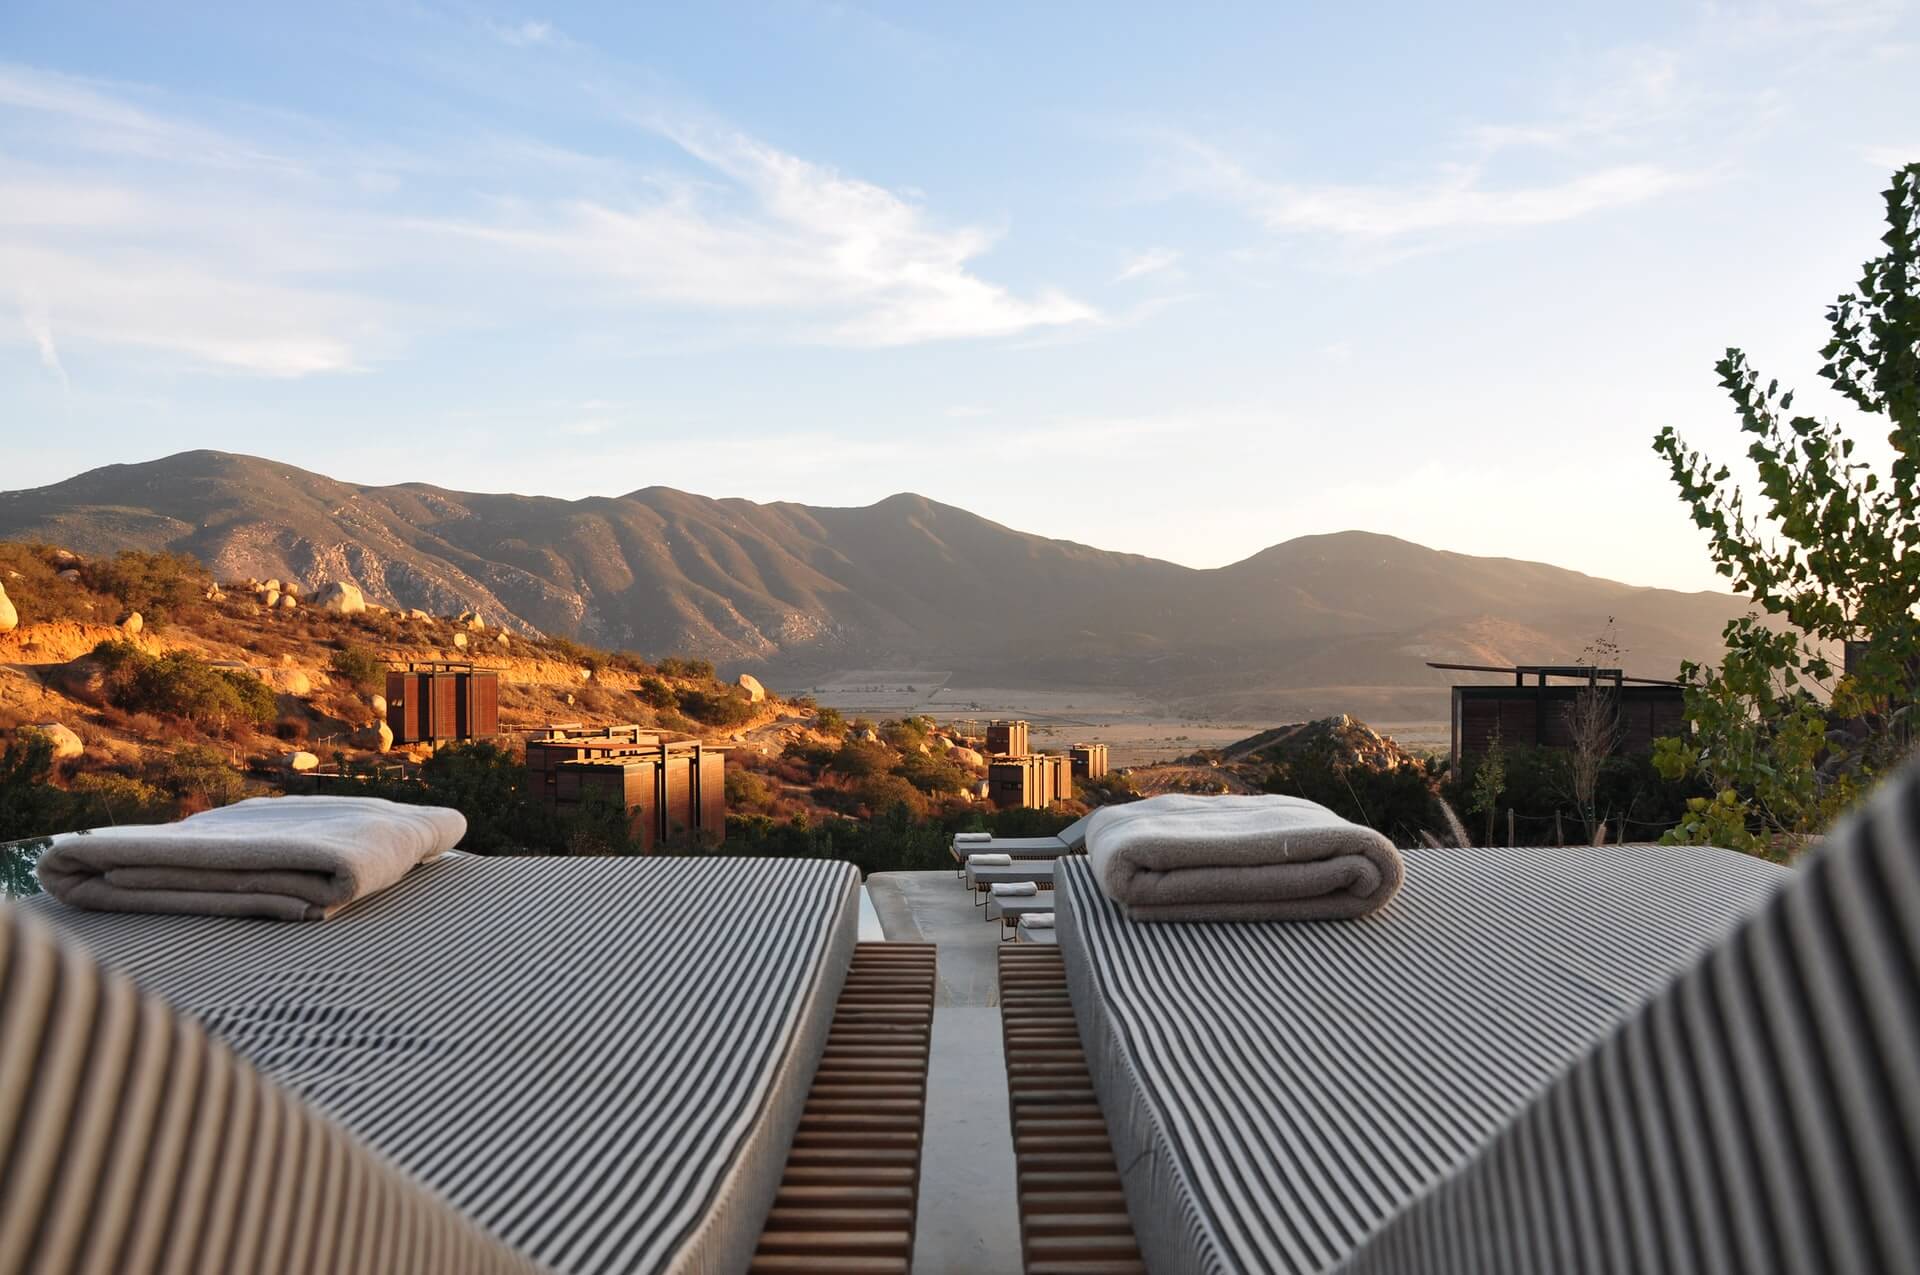 Luxury Holiday Villa Overlooking Mountains